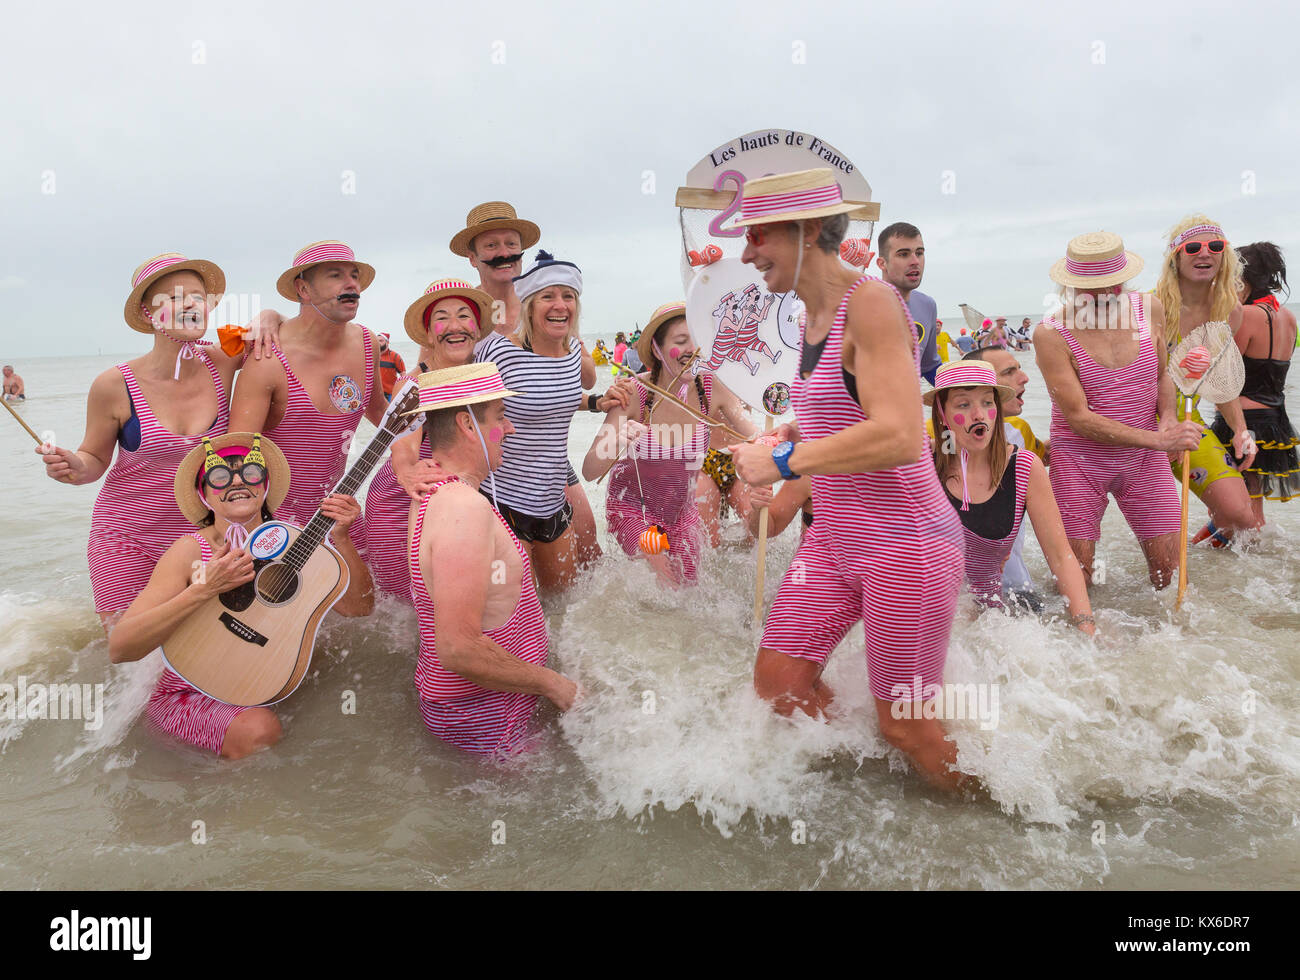 Le persone che hanno preso parte al tradizionale "Bain de Givres' come parte del nuovo anno di celebrazioni su Gennaio 1, 2018 a Malo-Les-Bains beach in Dunkerque Foto Stock